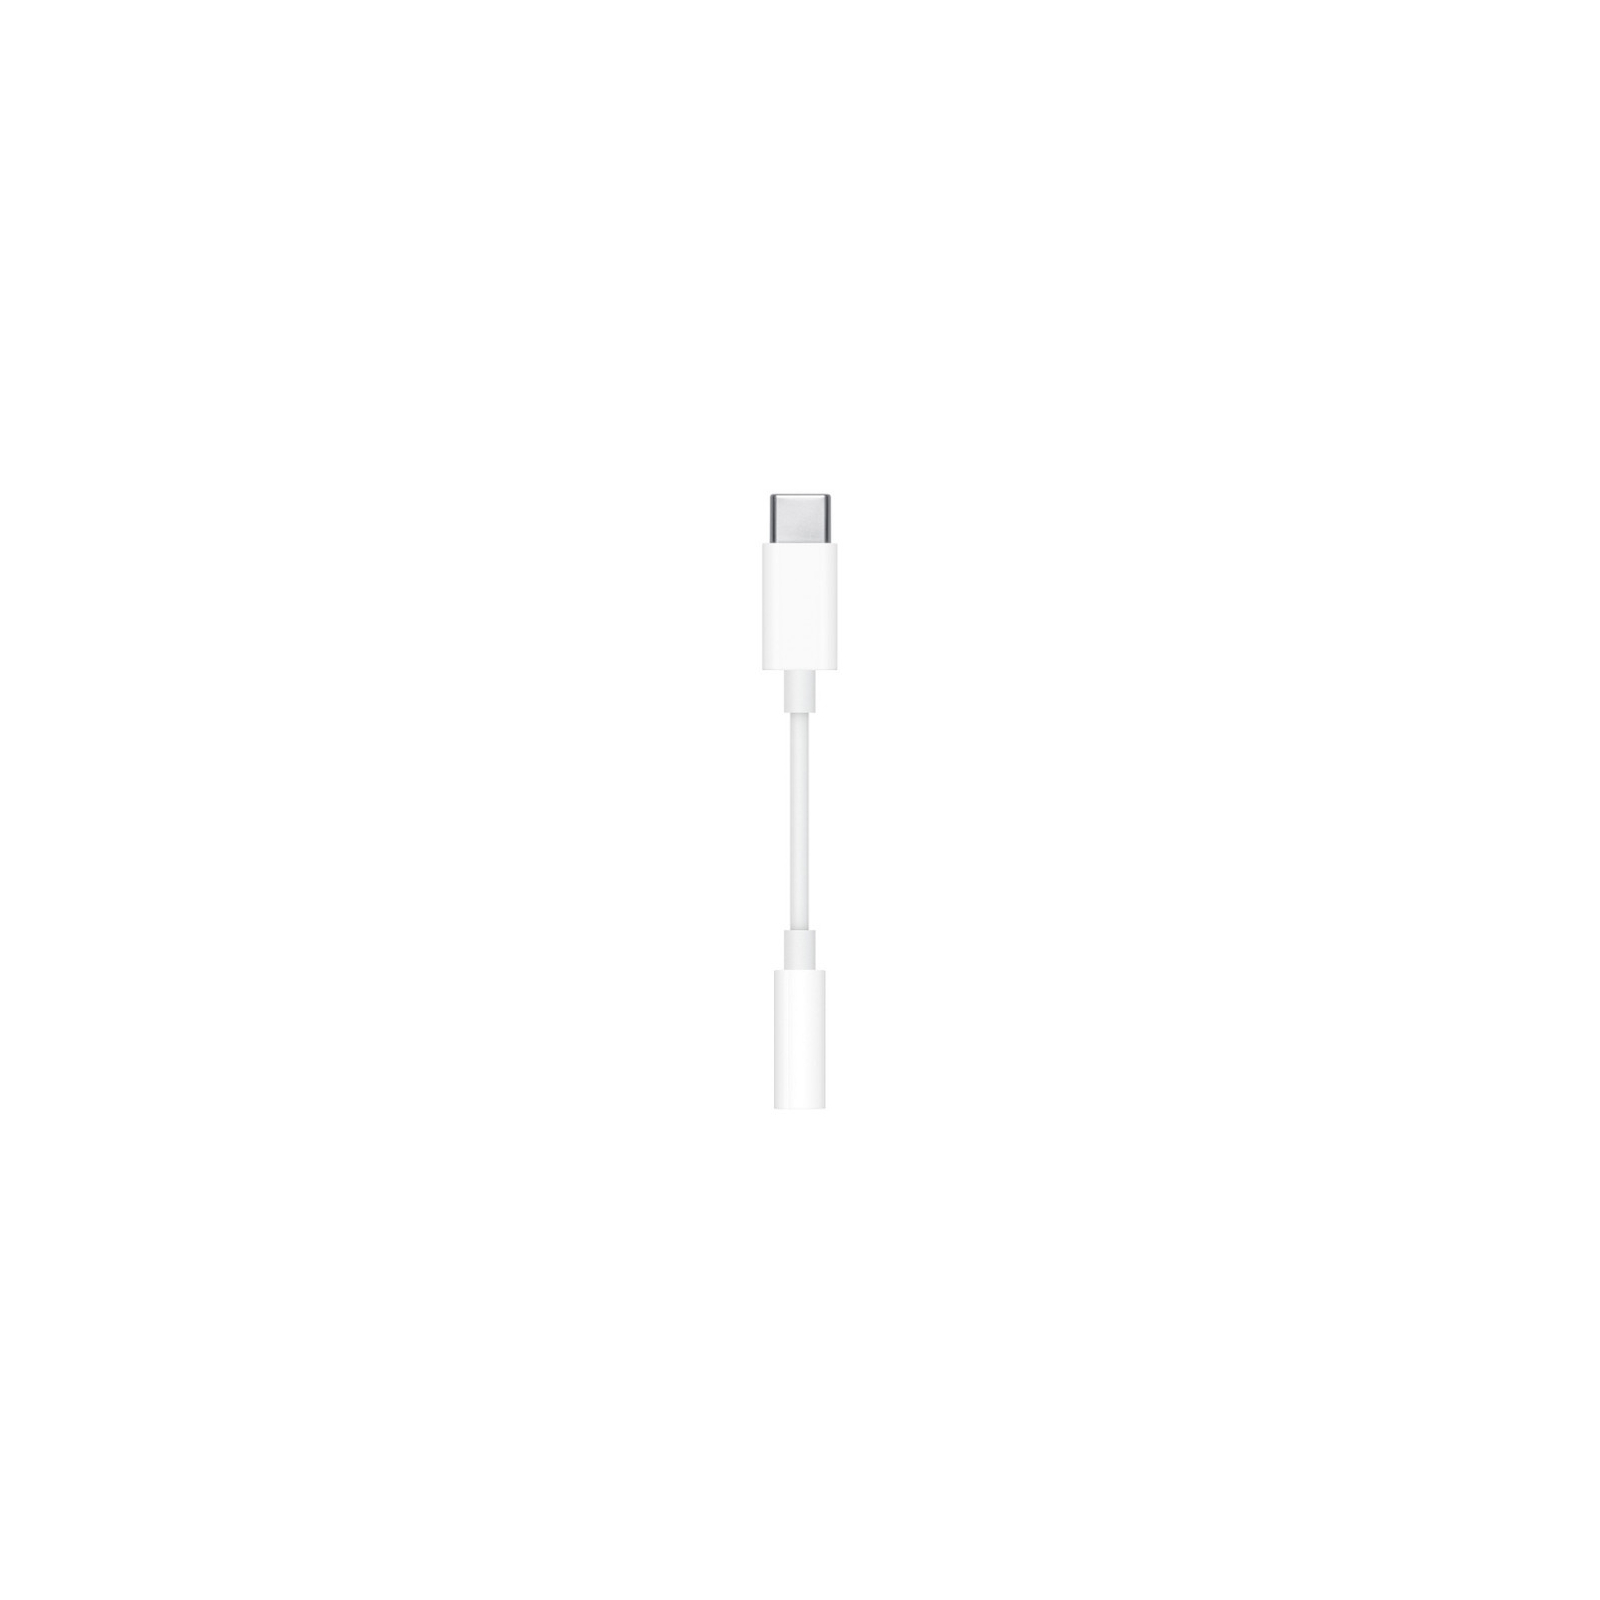 Переходник Apple USB-C to 3.5 mm Headphone Jack Adapter, Model A2155 (MU7E2ZM/A) изображение 2